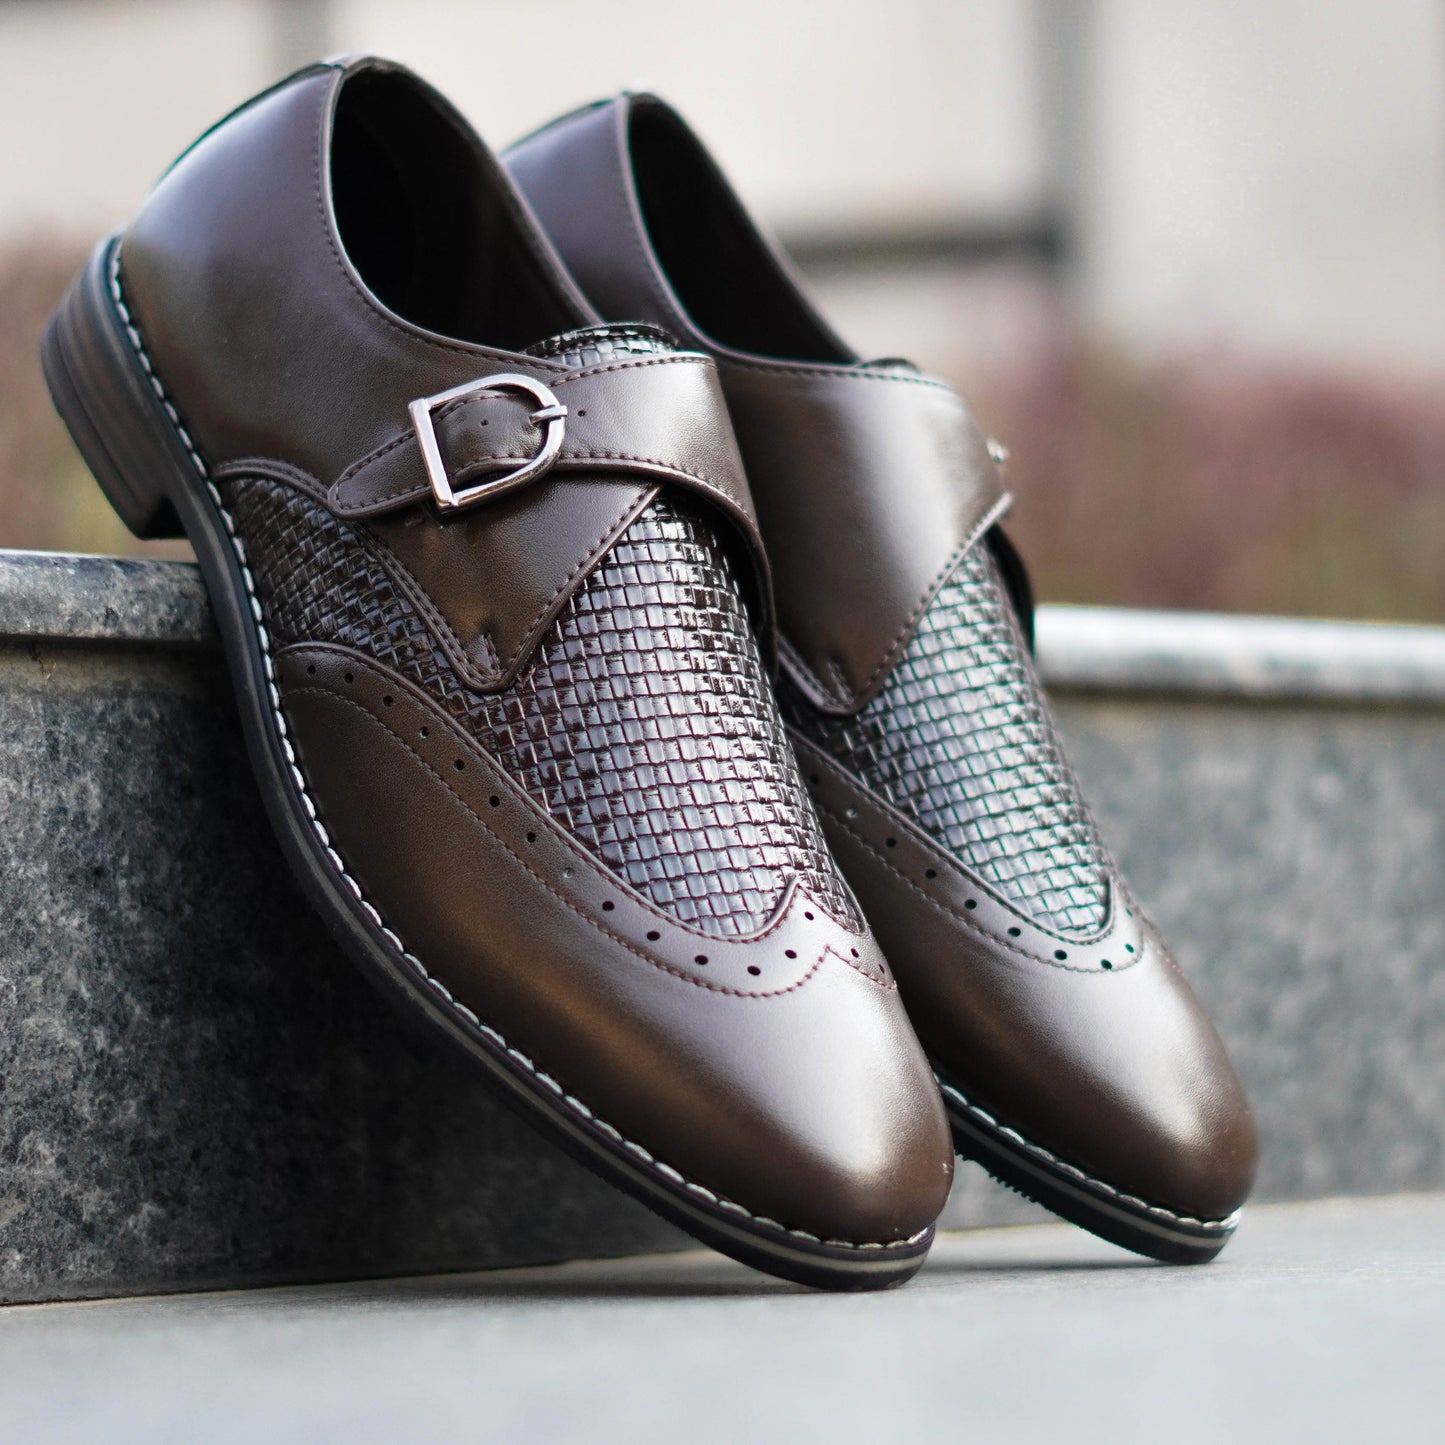 Palacio - Premium Handcrafted Formal Shoes